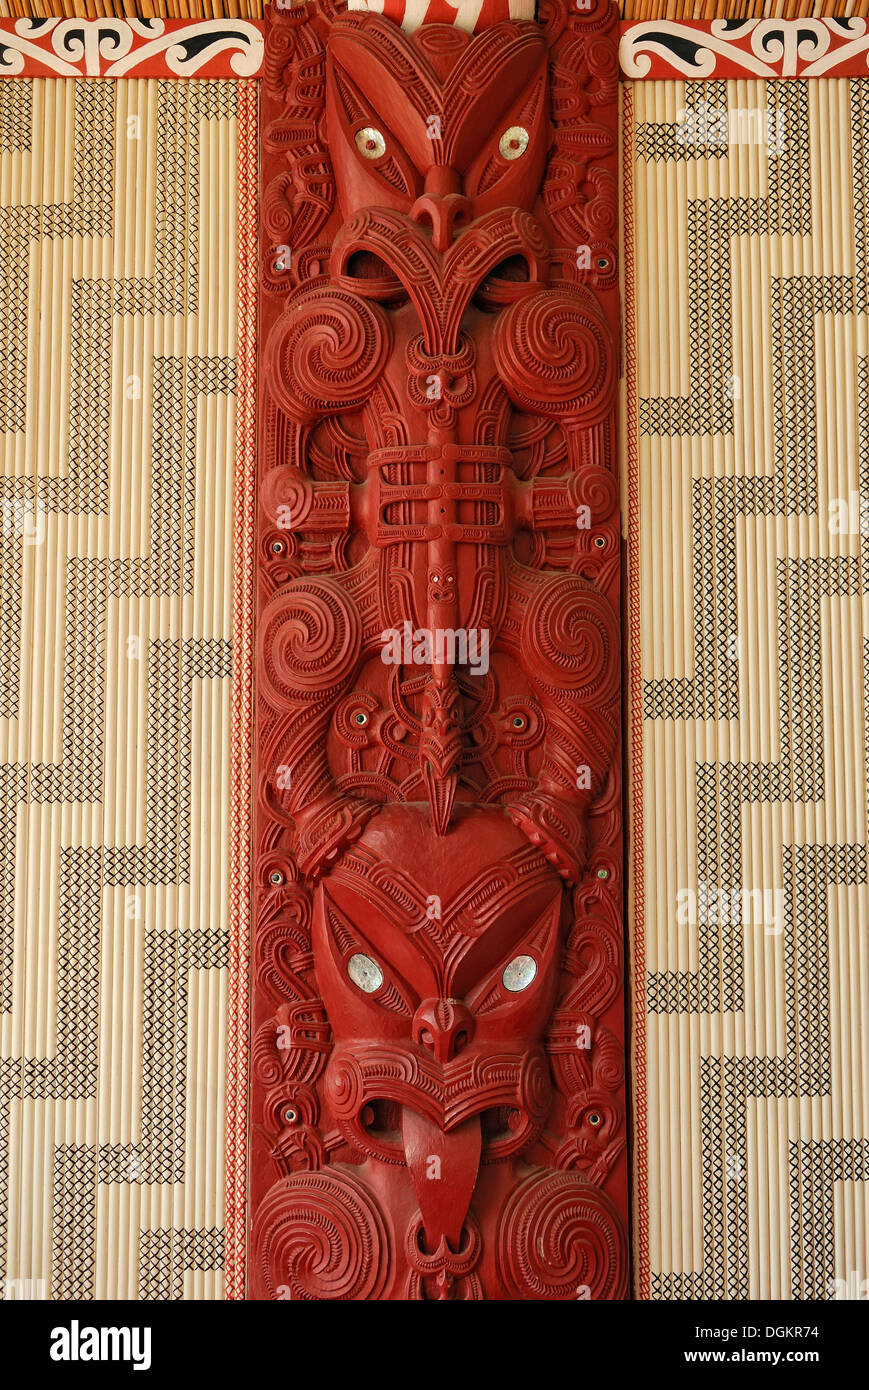 La sculpture maorie, l'allégement en bois avec incrustations de nacre, la représentation de dessins et ornements, Maori Meeting House Banque D'Images